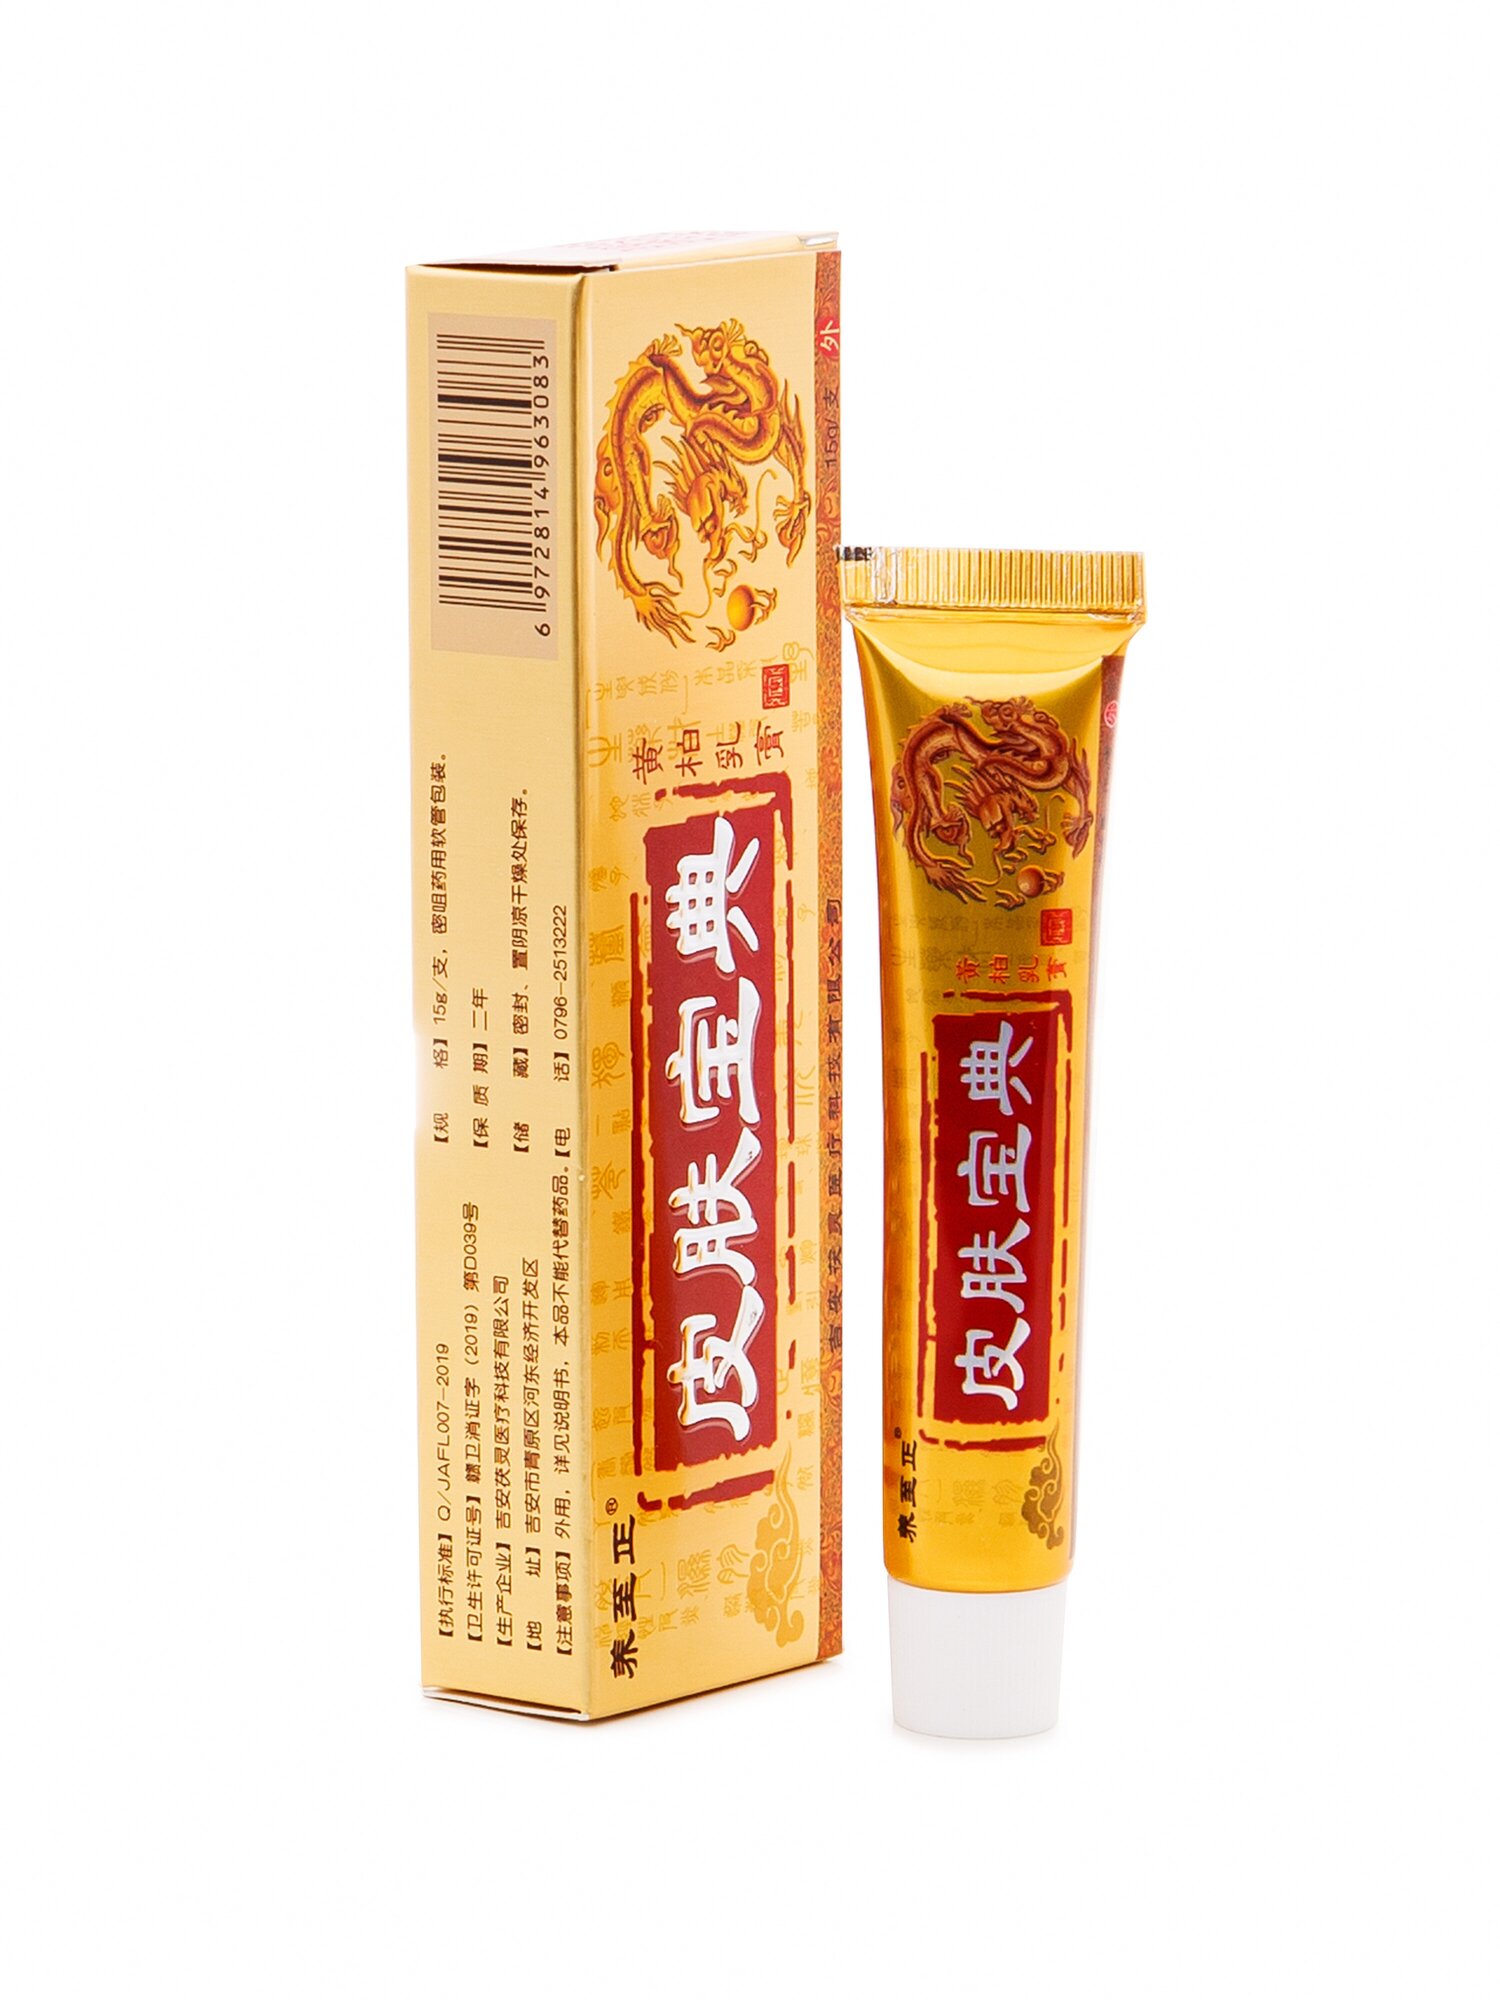 Крем Yiganerjing Pifu Baodian, Чудо мазь, средство от псориаза, дерматита, лишая, экземе 15г.